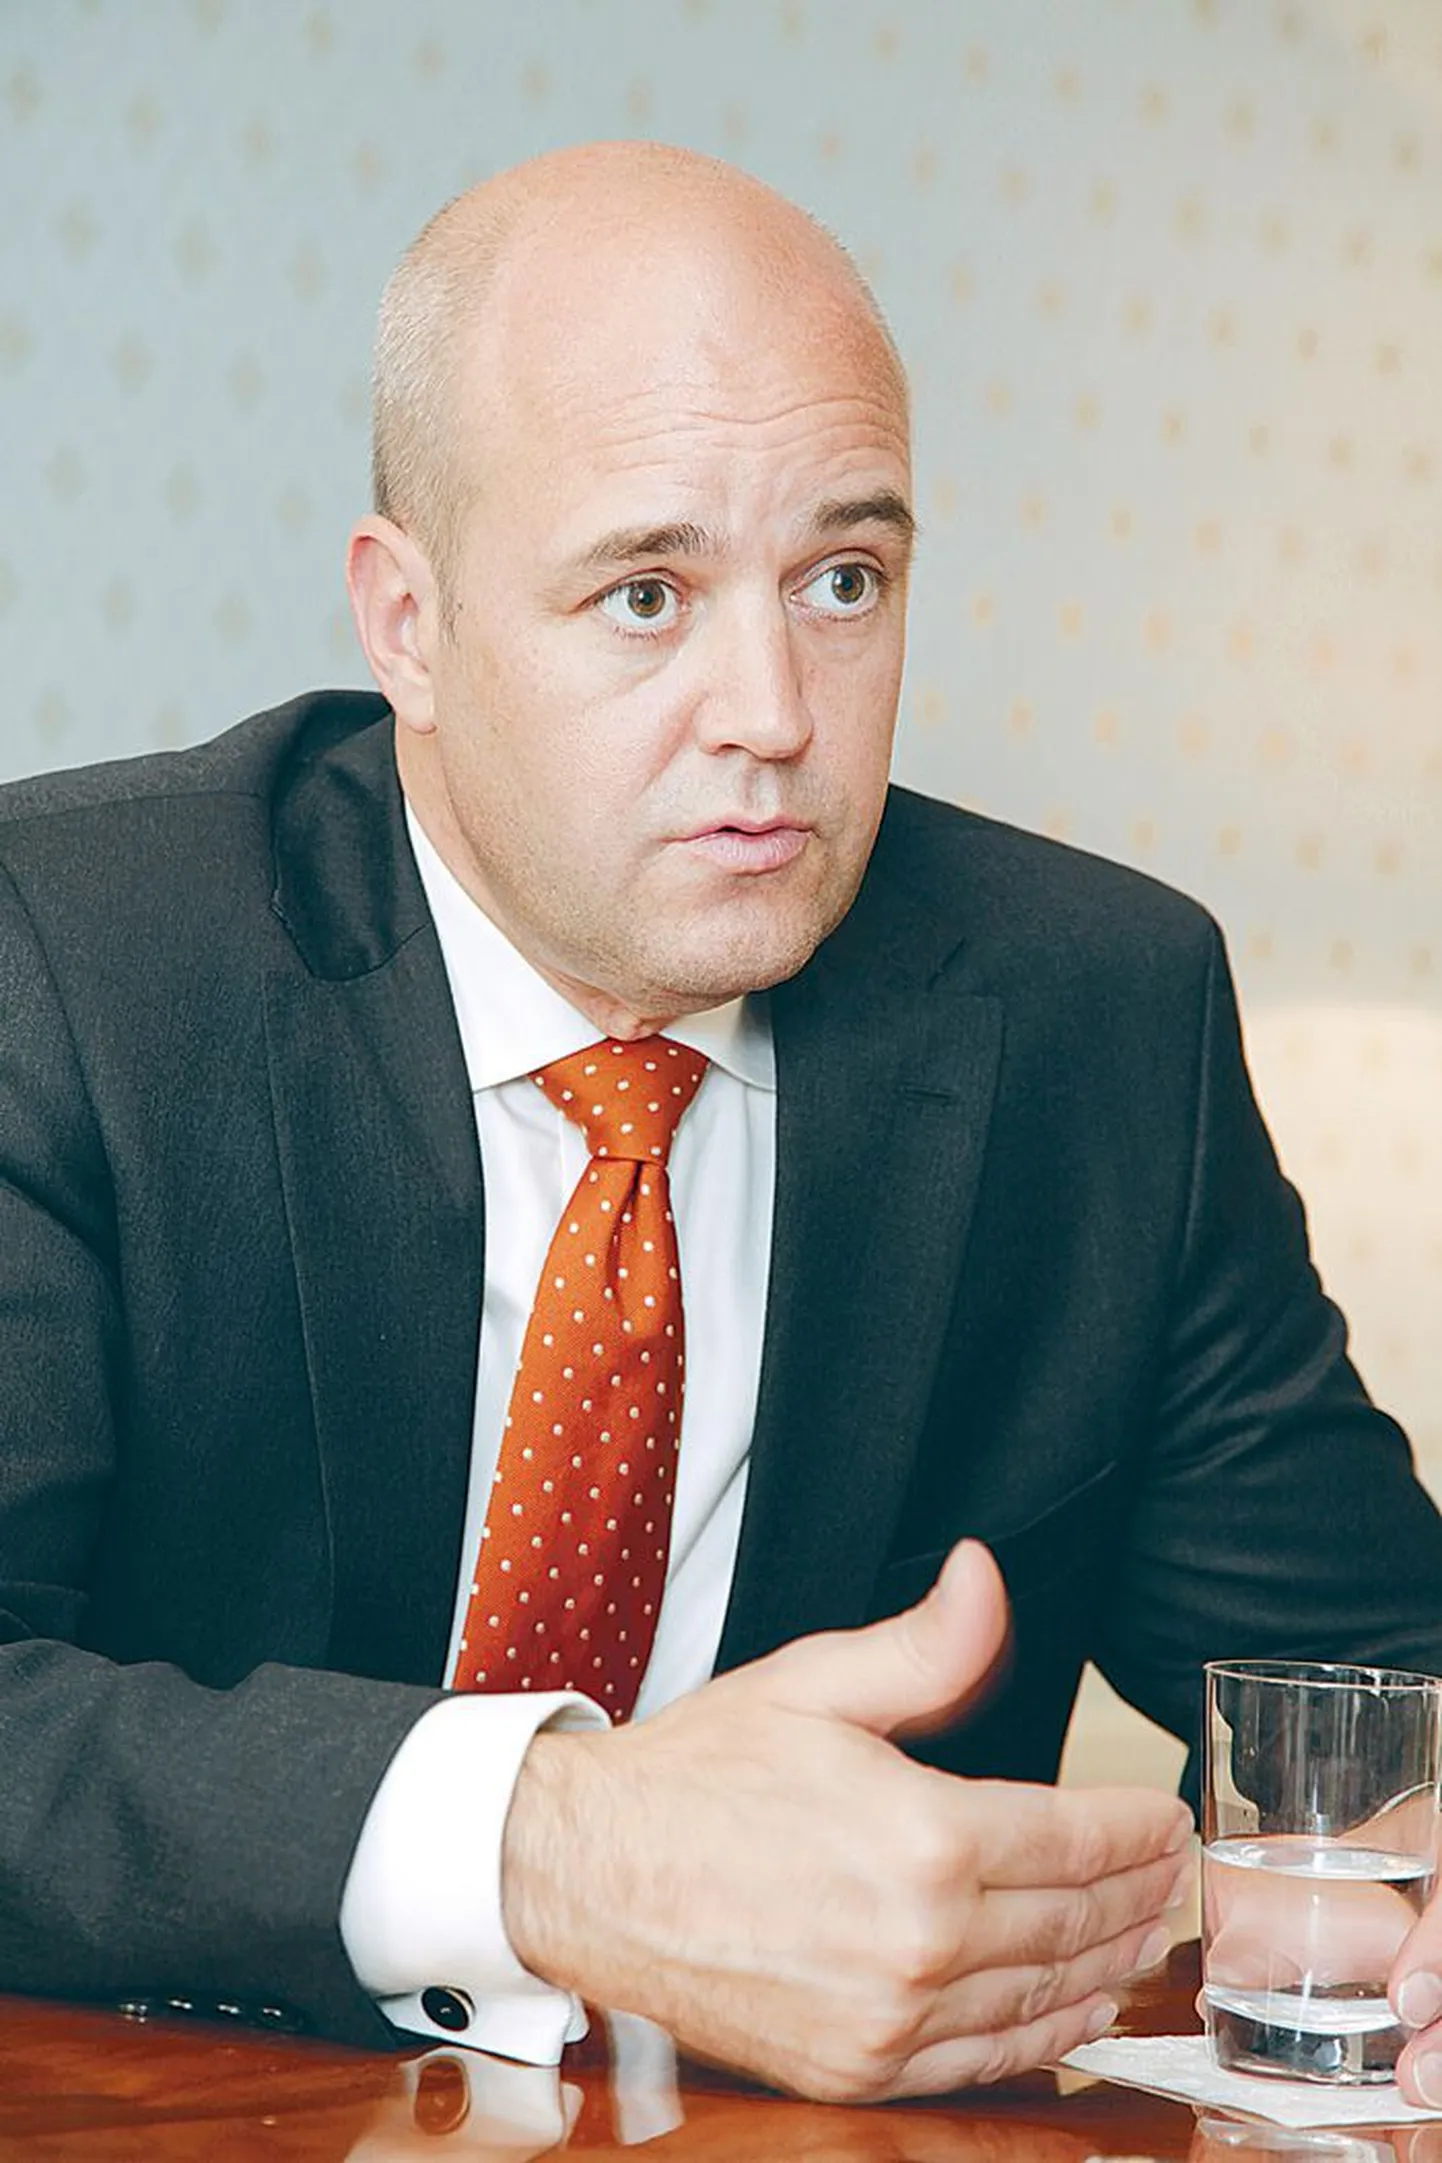 Rootsi peaminister Fredrik Reinfeldt külastas Eestit üleeile enda sõnul neljandat korda. Praeguses ametis oli aga tegemist teise visiidiga.